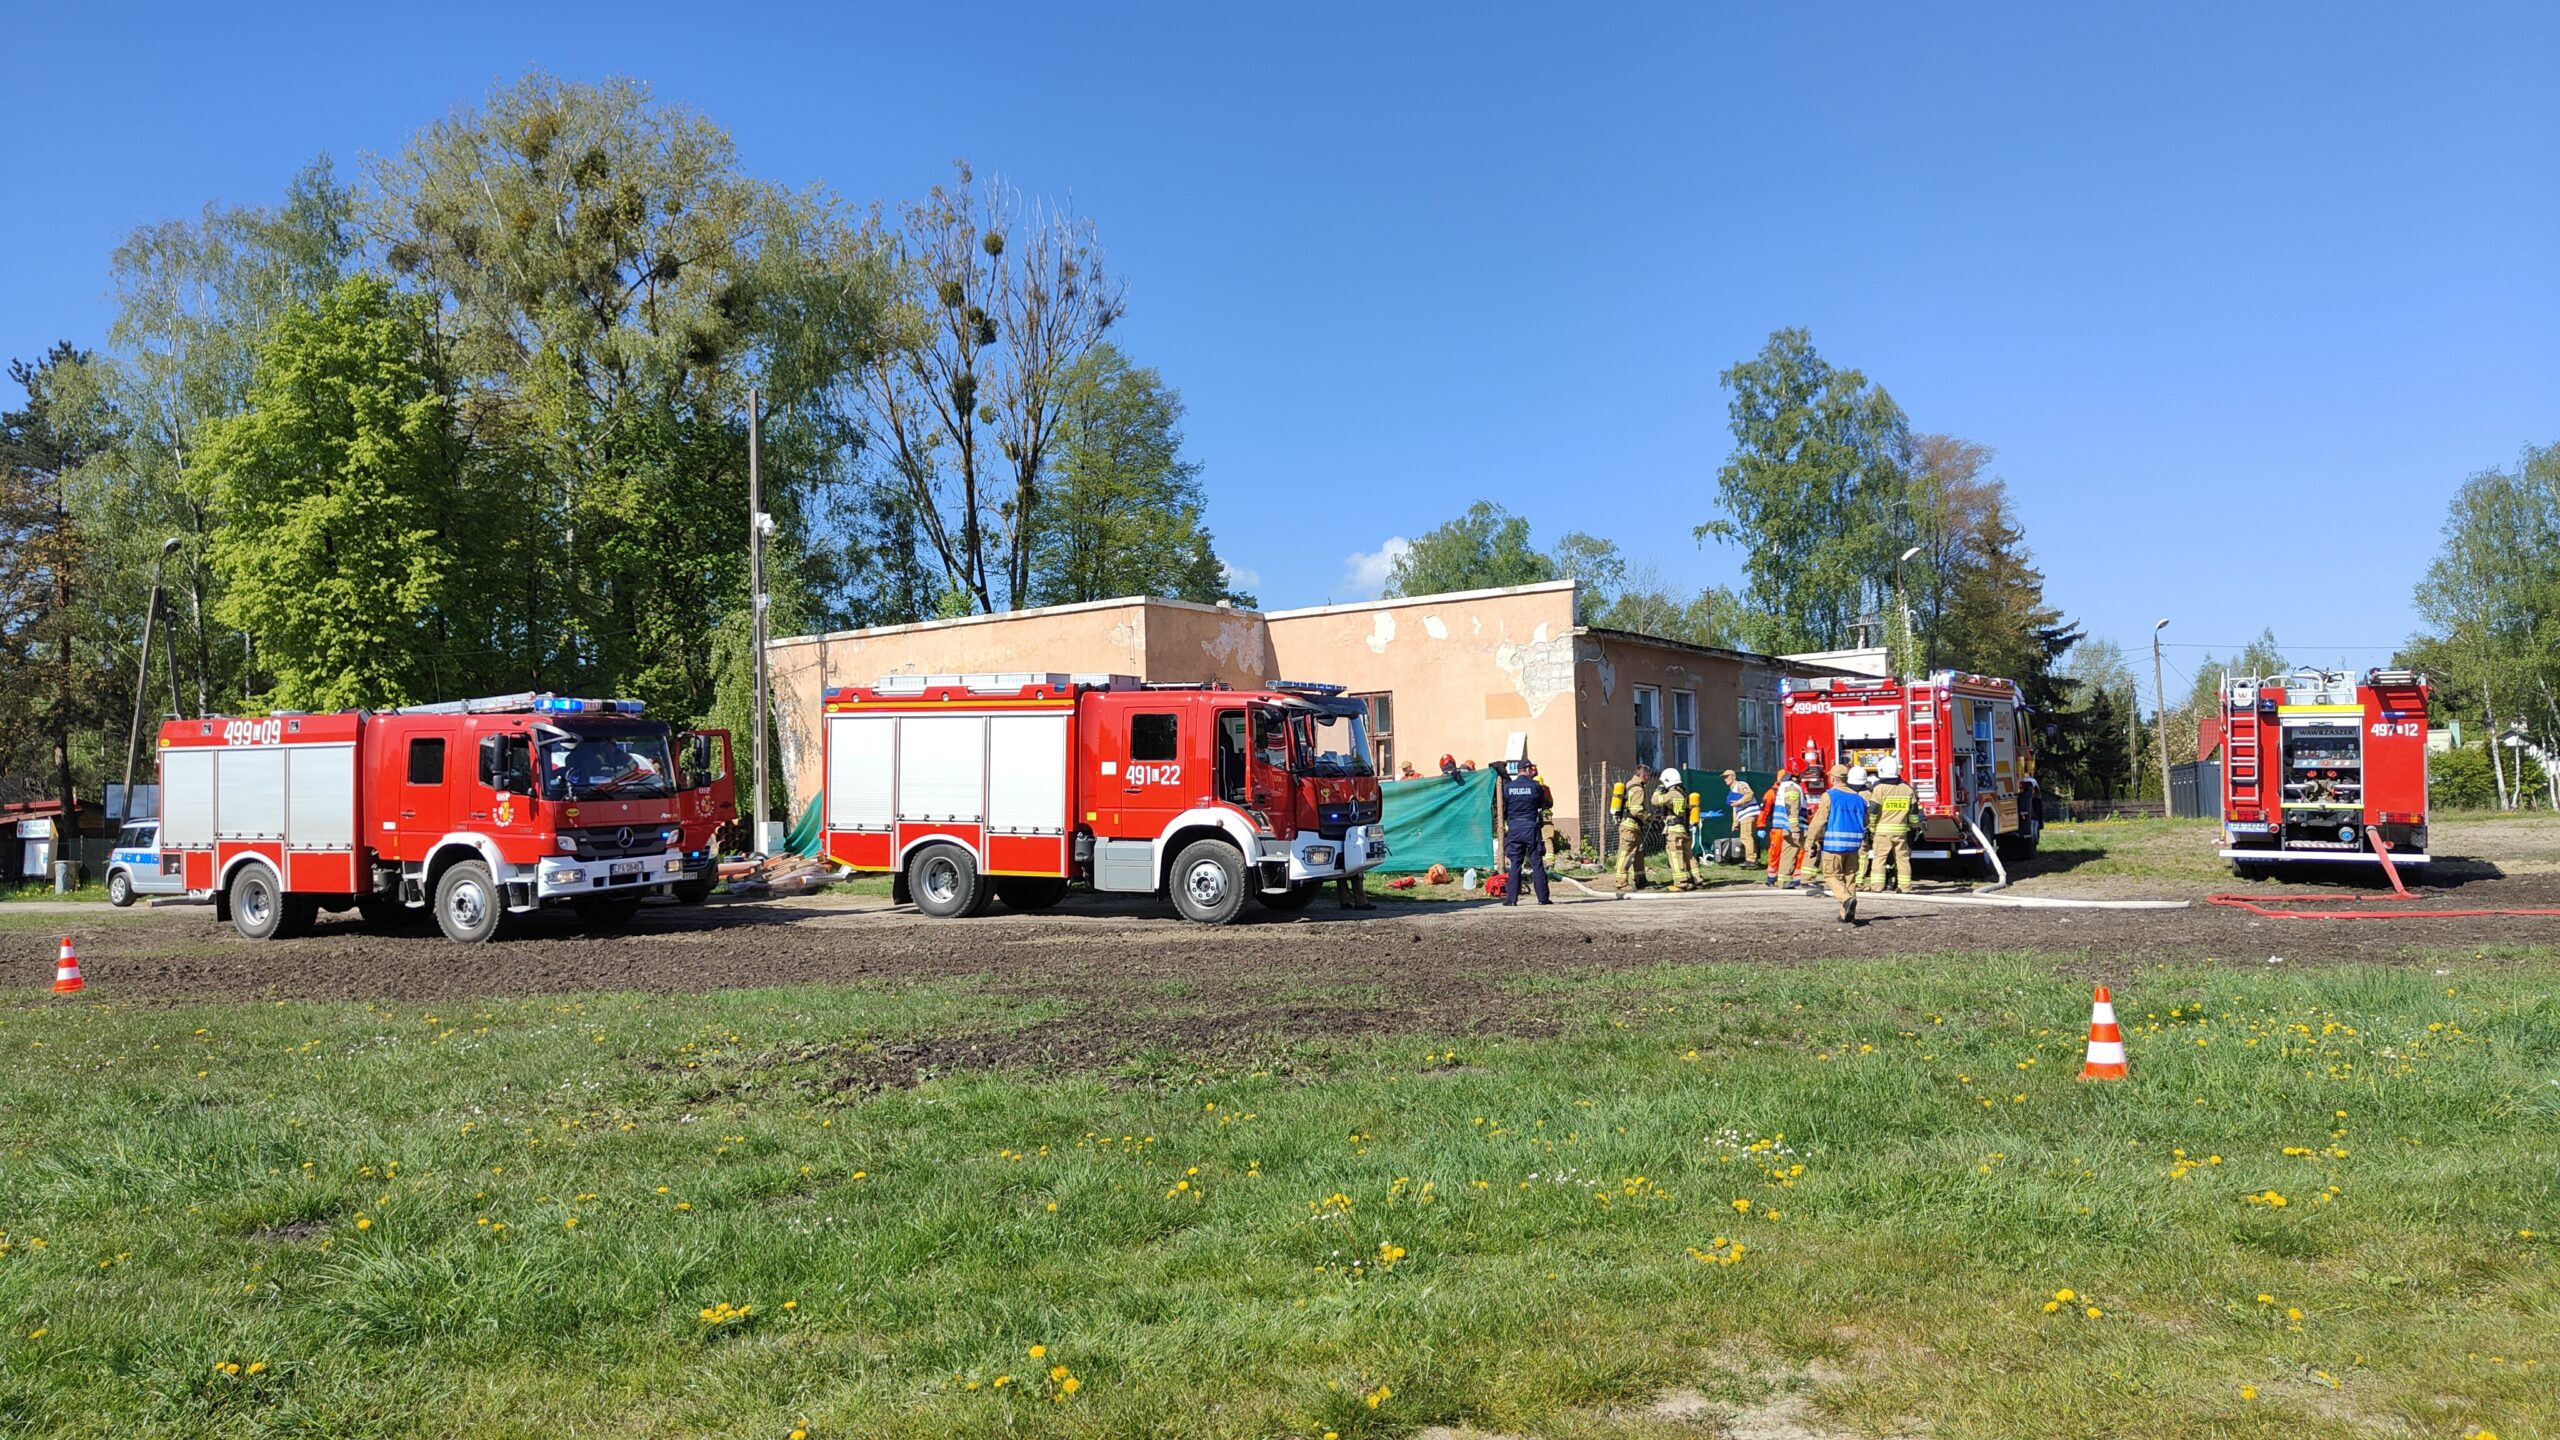 Pozorowany pożar budynku. W ćwiczeniu biorą udział cztery pojazdy pożarnicze, Zespół Ratownictwa Medycznego i Policja. Strażacy rozwinęli linie gaśnicze prowadzące do wnętrza budynku.